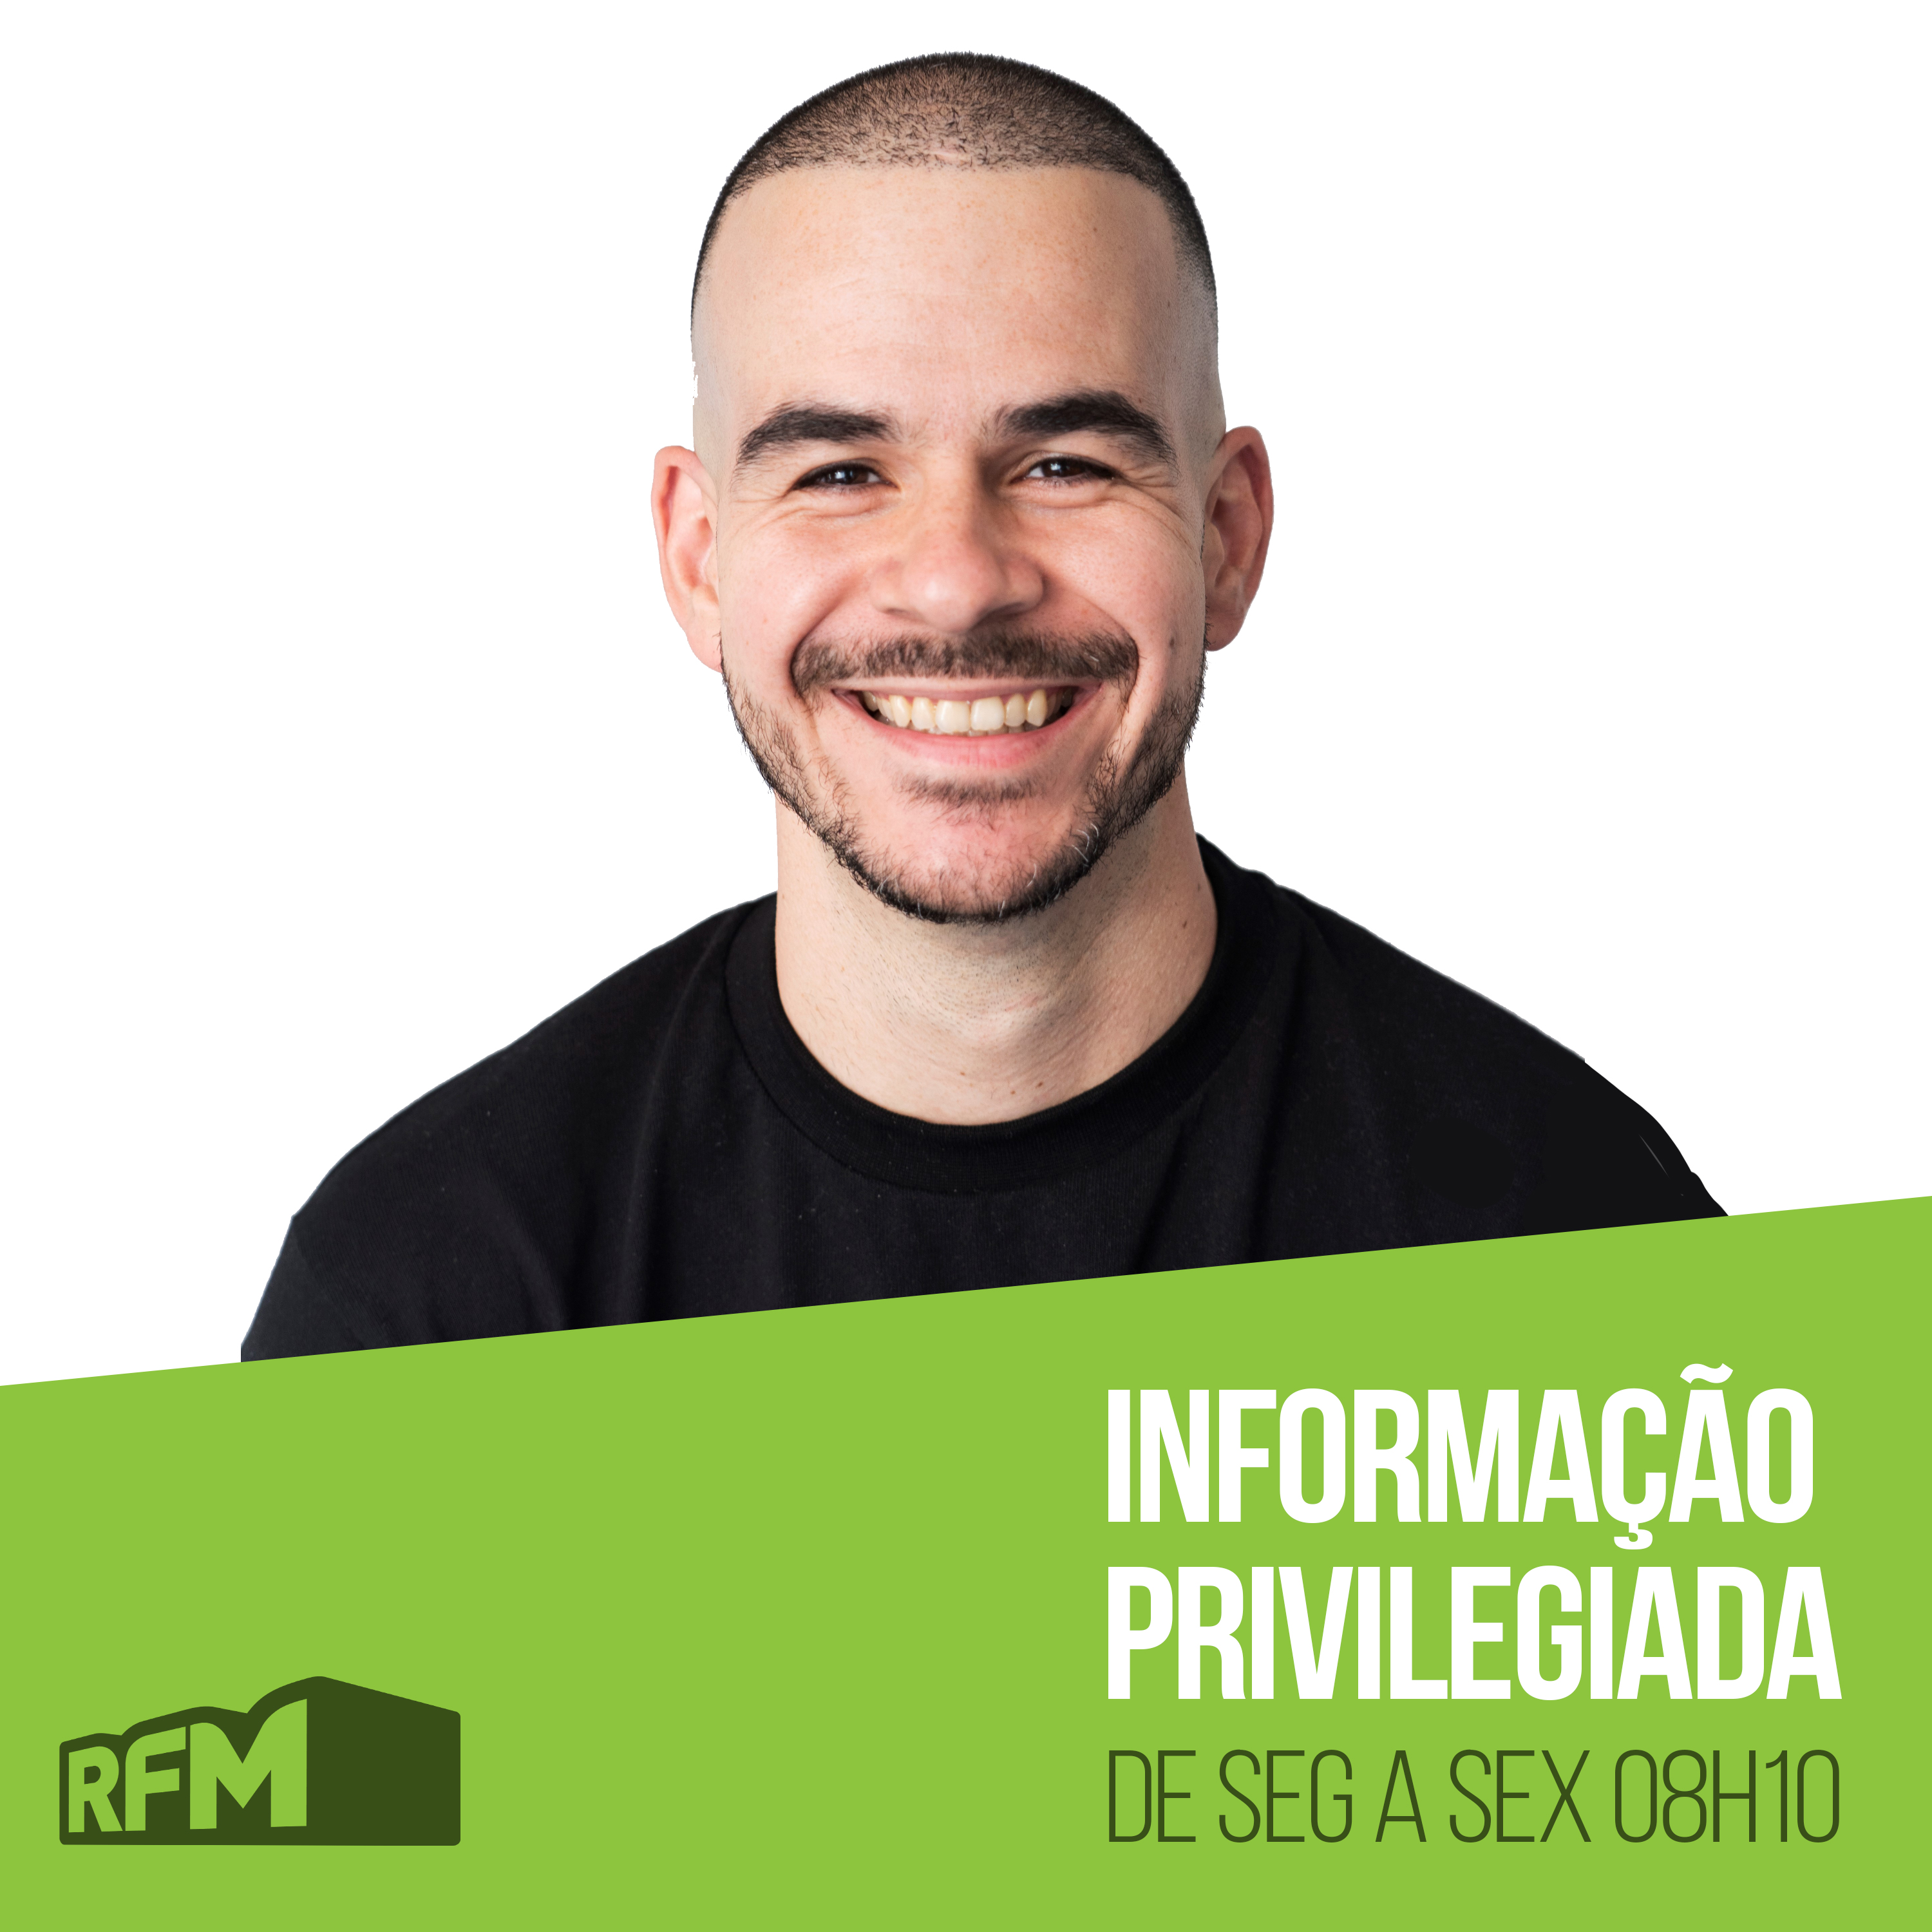 RFM - Informação Privilegiada: RUBICUNDO - SERVIÇO DE BATE-CHAPAS